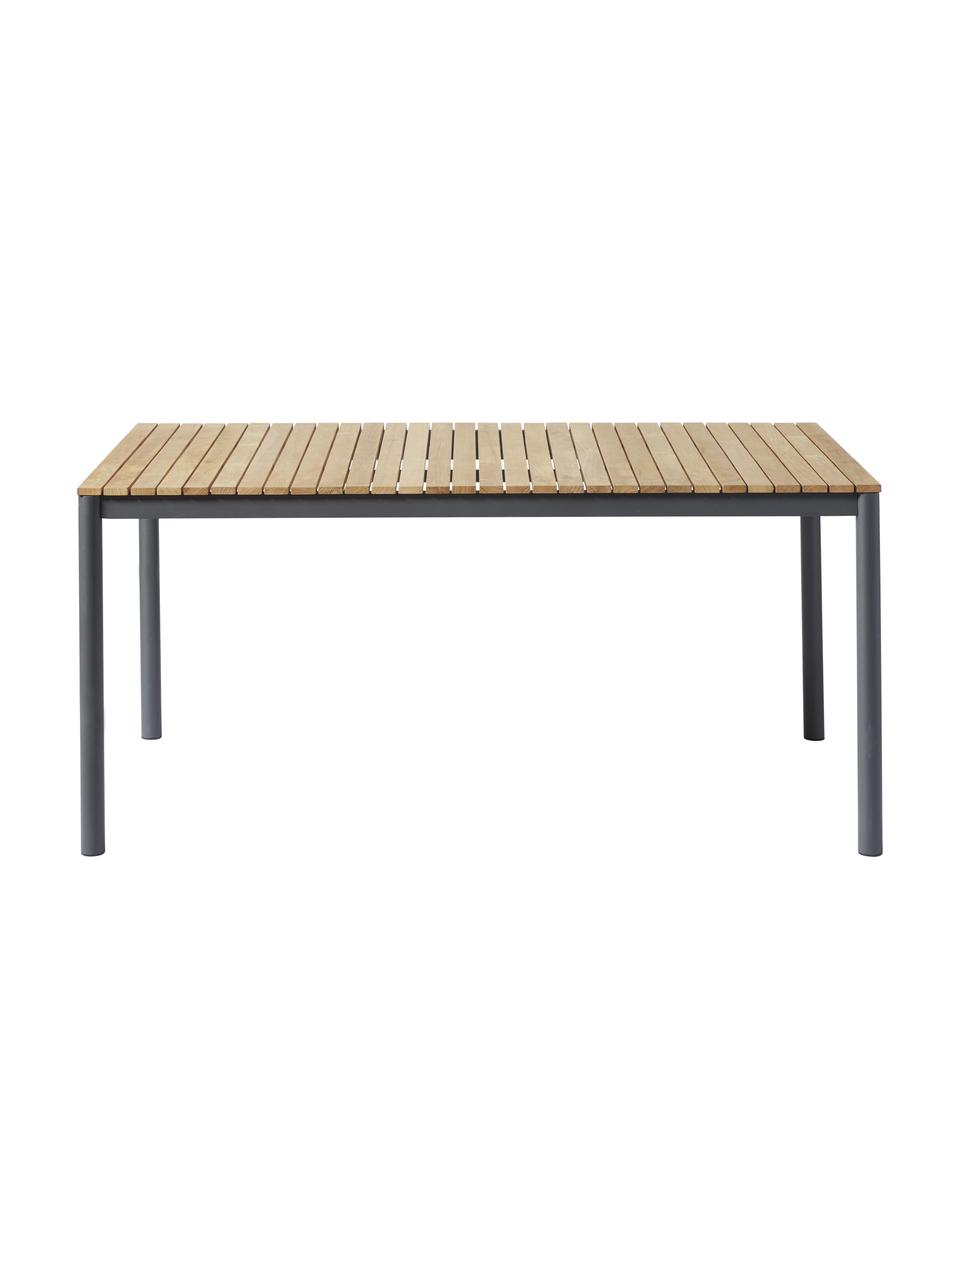 Zahradní stůl s teakovou deskou Mood, různé velikosti, Teakové dřevo, antracitová, Š 208 cm, H 100 cm